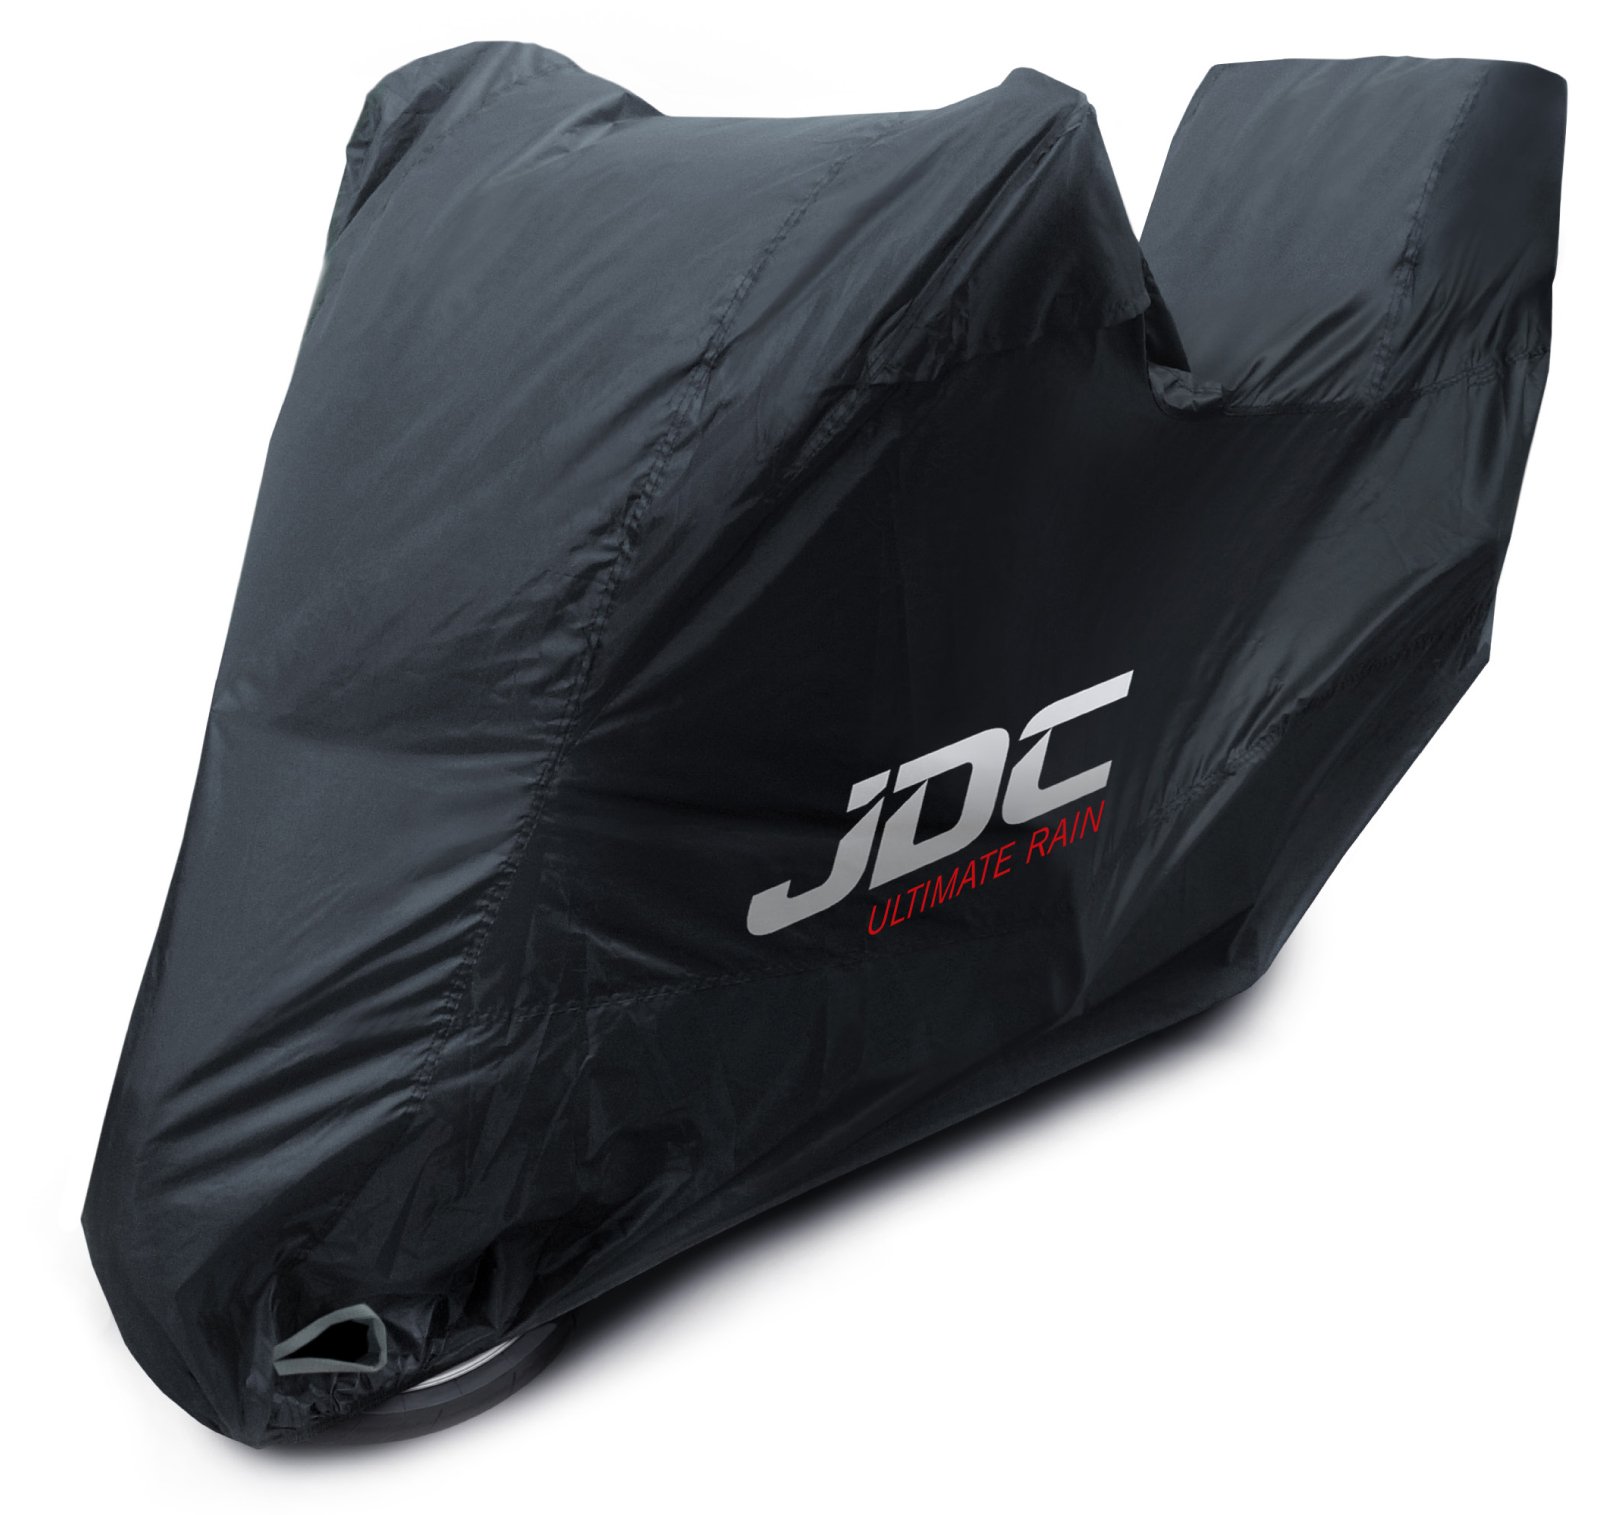 JDC 100% wasserdichte Motorradabdeckung – Ultimate RAIN (Strapazierfähig, weiches Futter, hitzebeständig, verschweißte Nähte) - S Top-Box